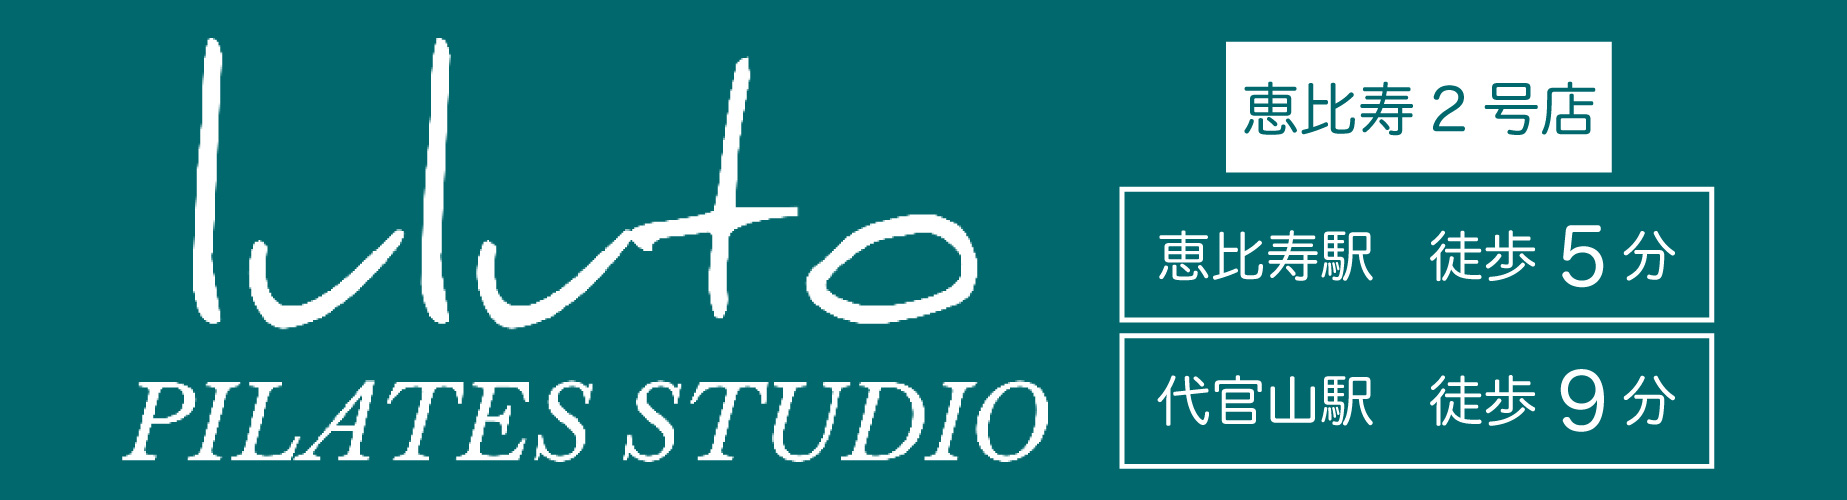 ピラティススタジオ『ルルト』恵比寿2号店